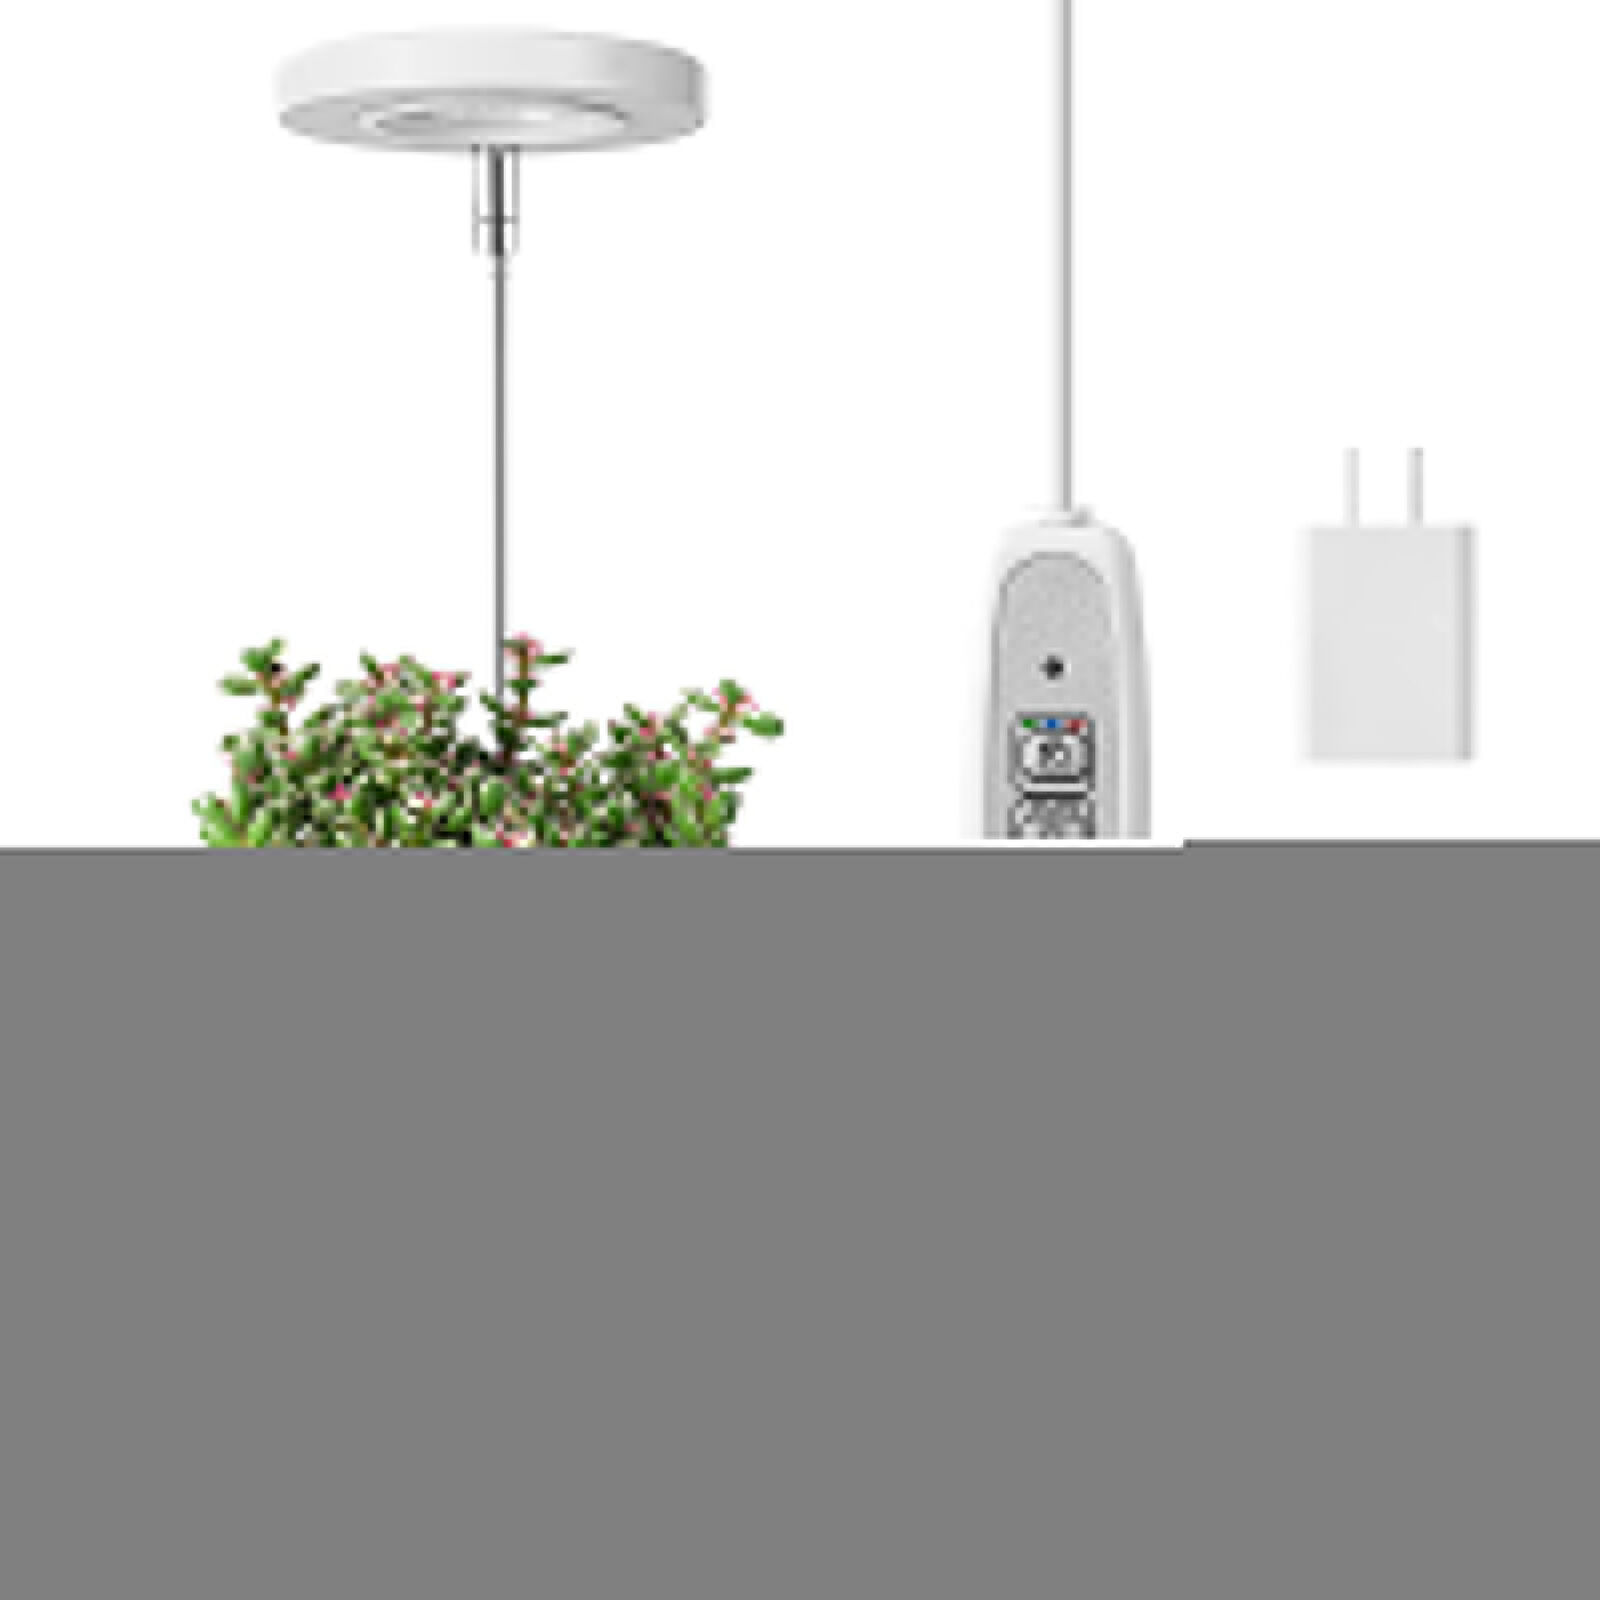 LED Plant Grow Light Halo Lamp Ring USB Full Spectrum For Indoor Flower Plants